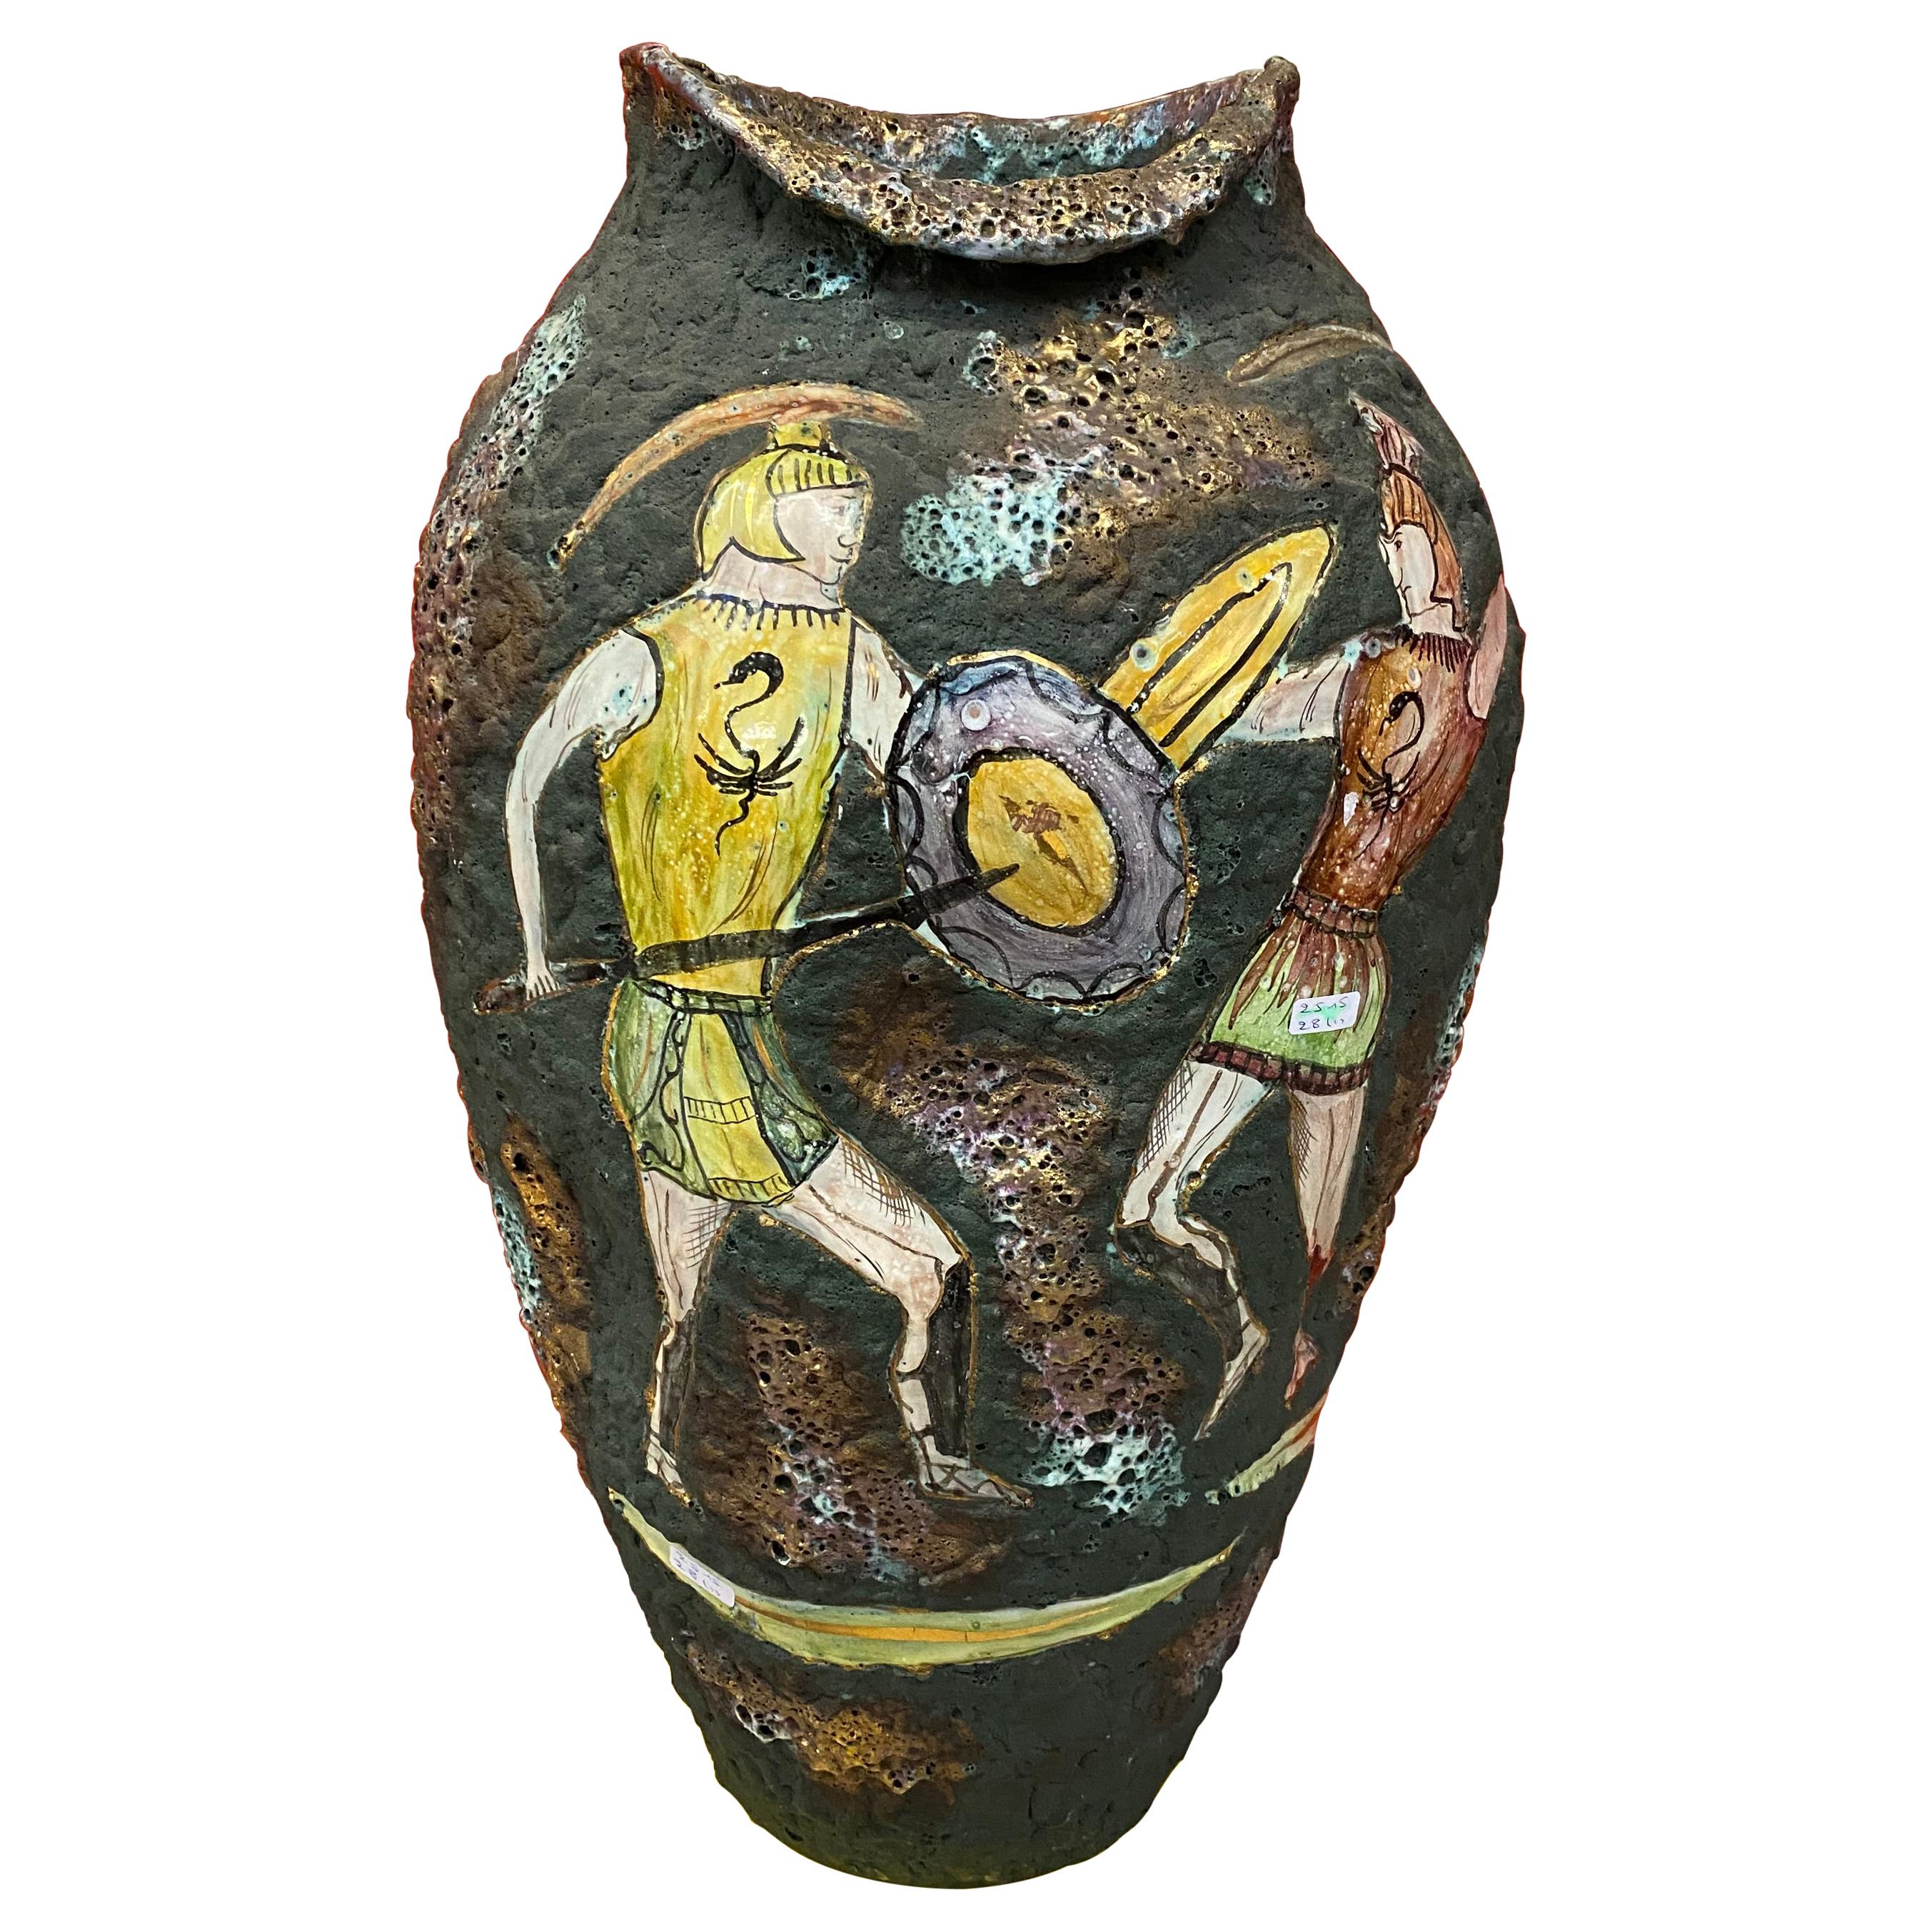 Italie, Very Large Ceramic Vase circa 1950/1960, Signature to Identify